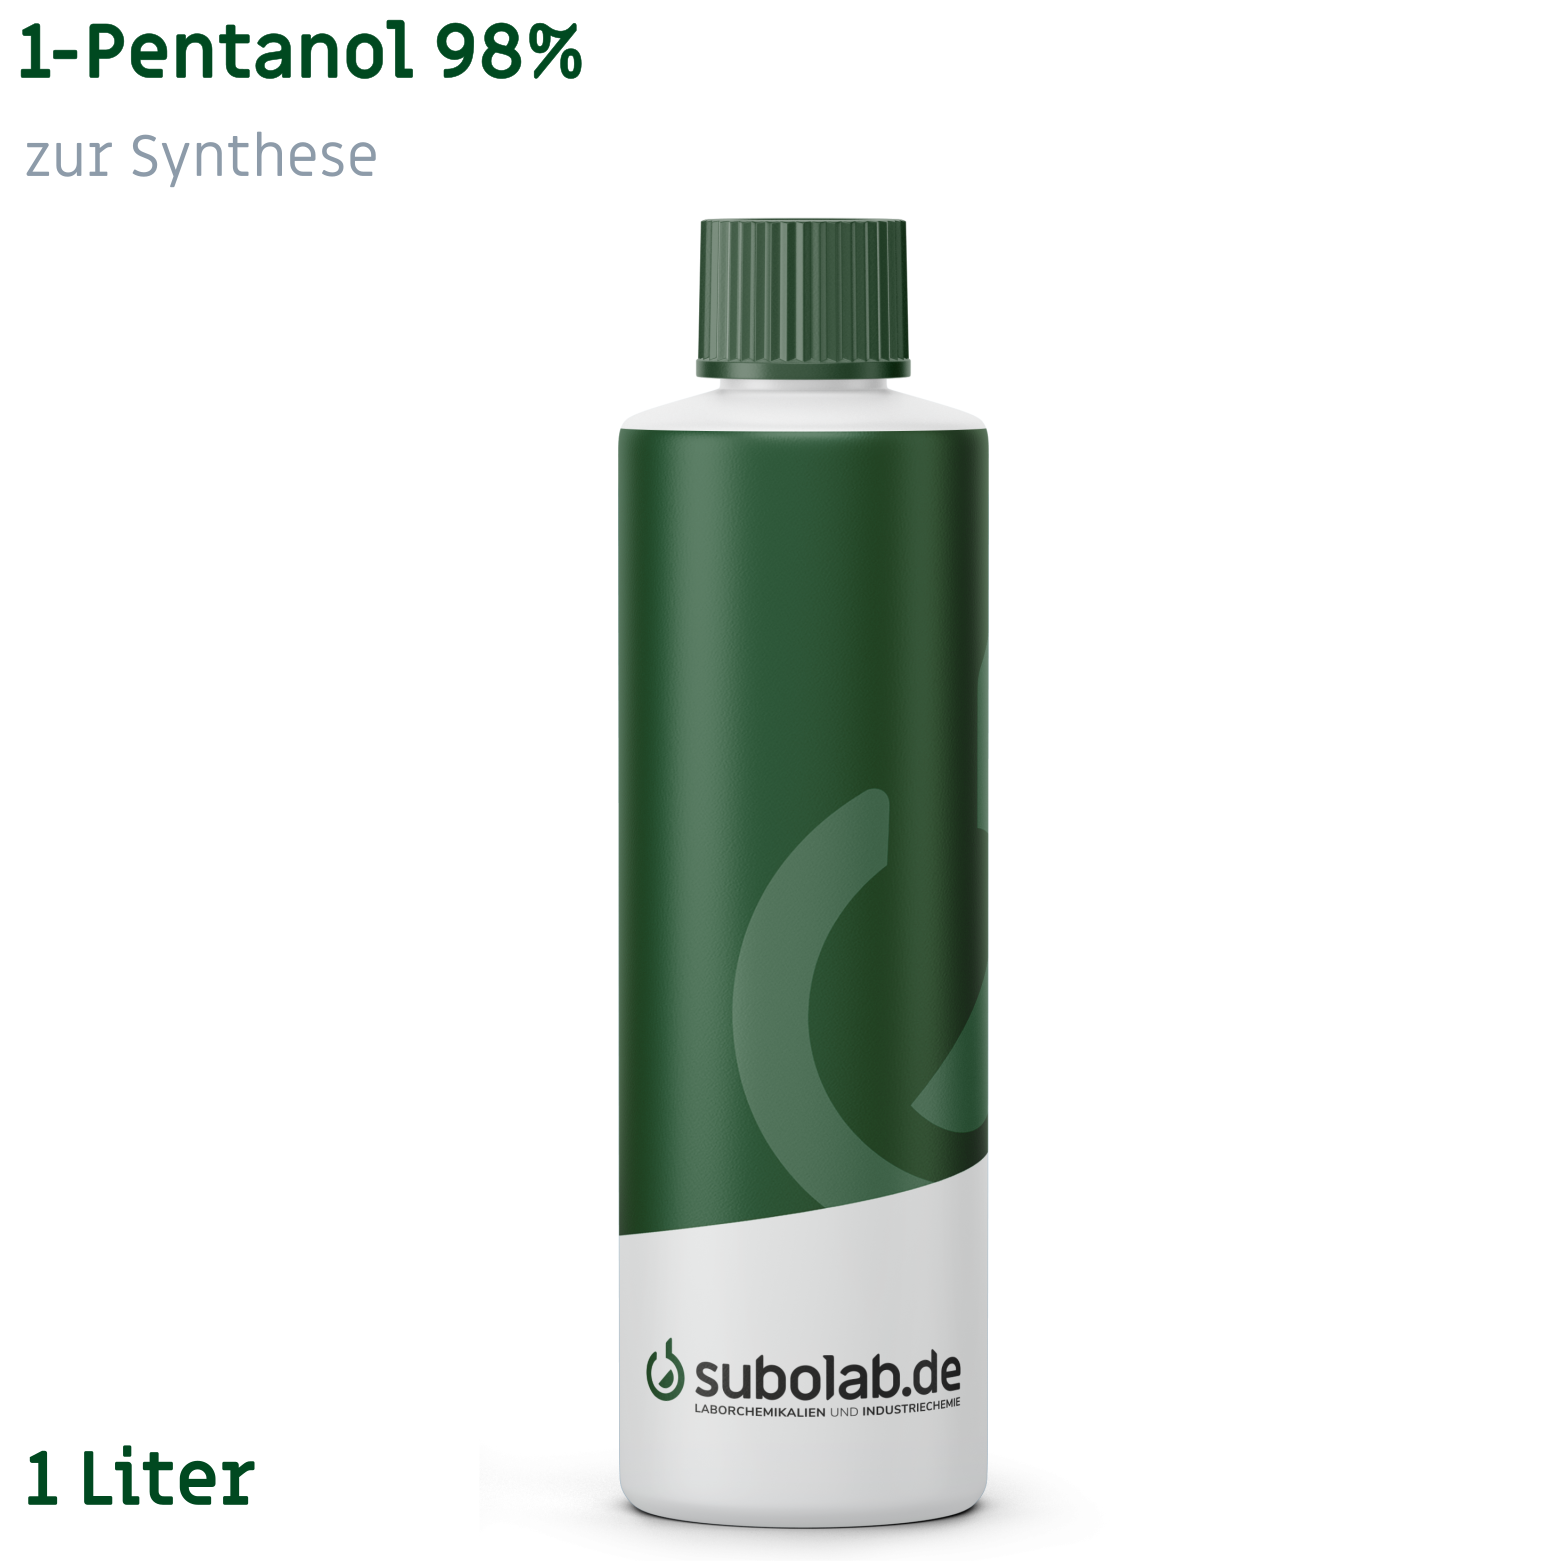 Bild von 1-Pentanol 98% zur Synthese (1 Liter)